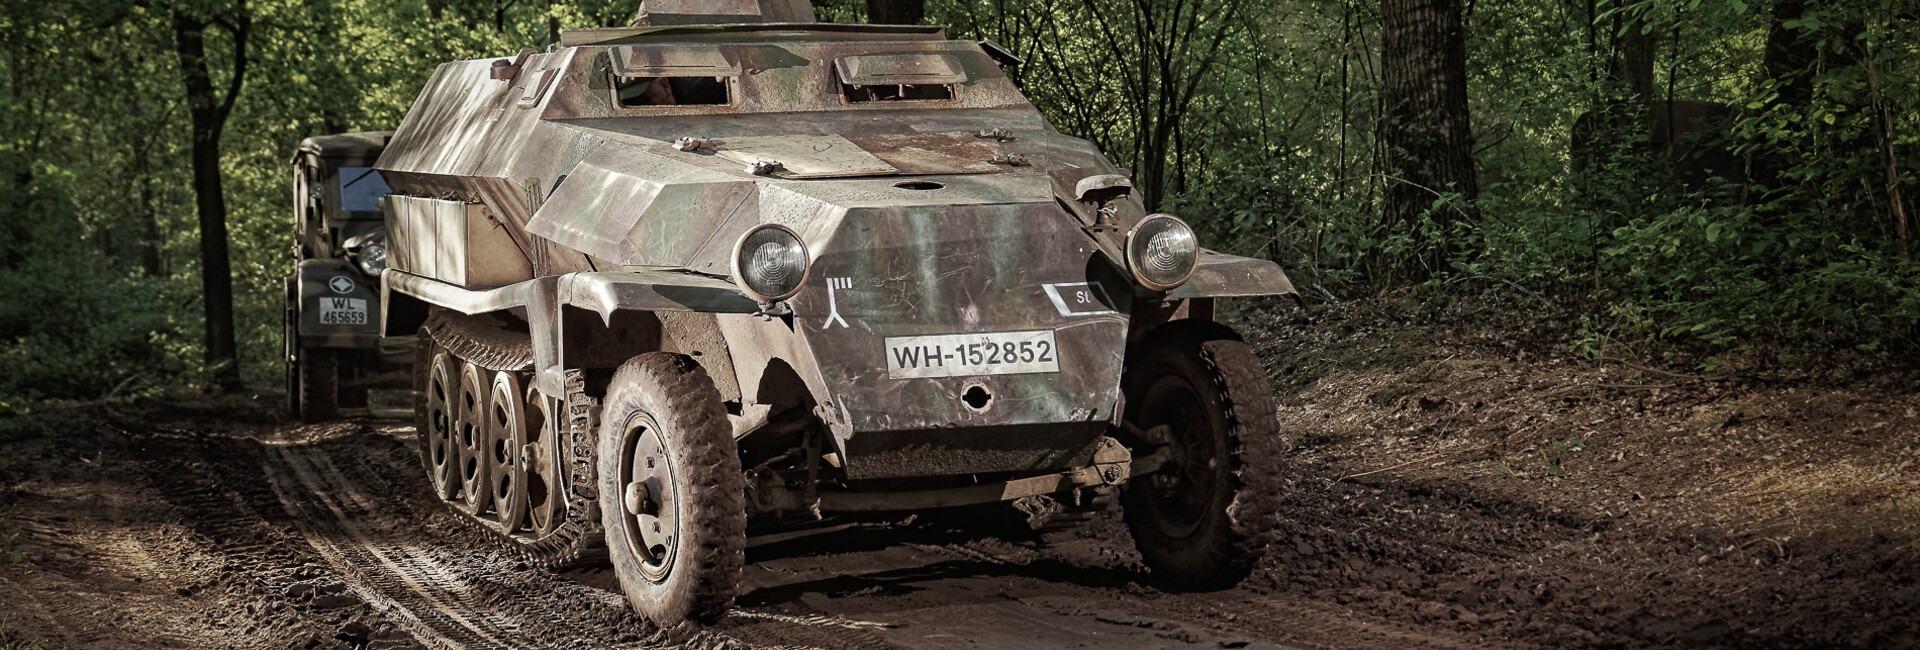 oorlogsmuseum - Teilnehmende Fahrzeuge